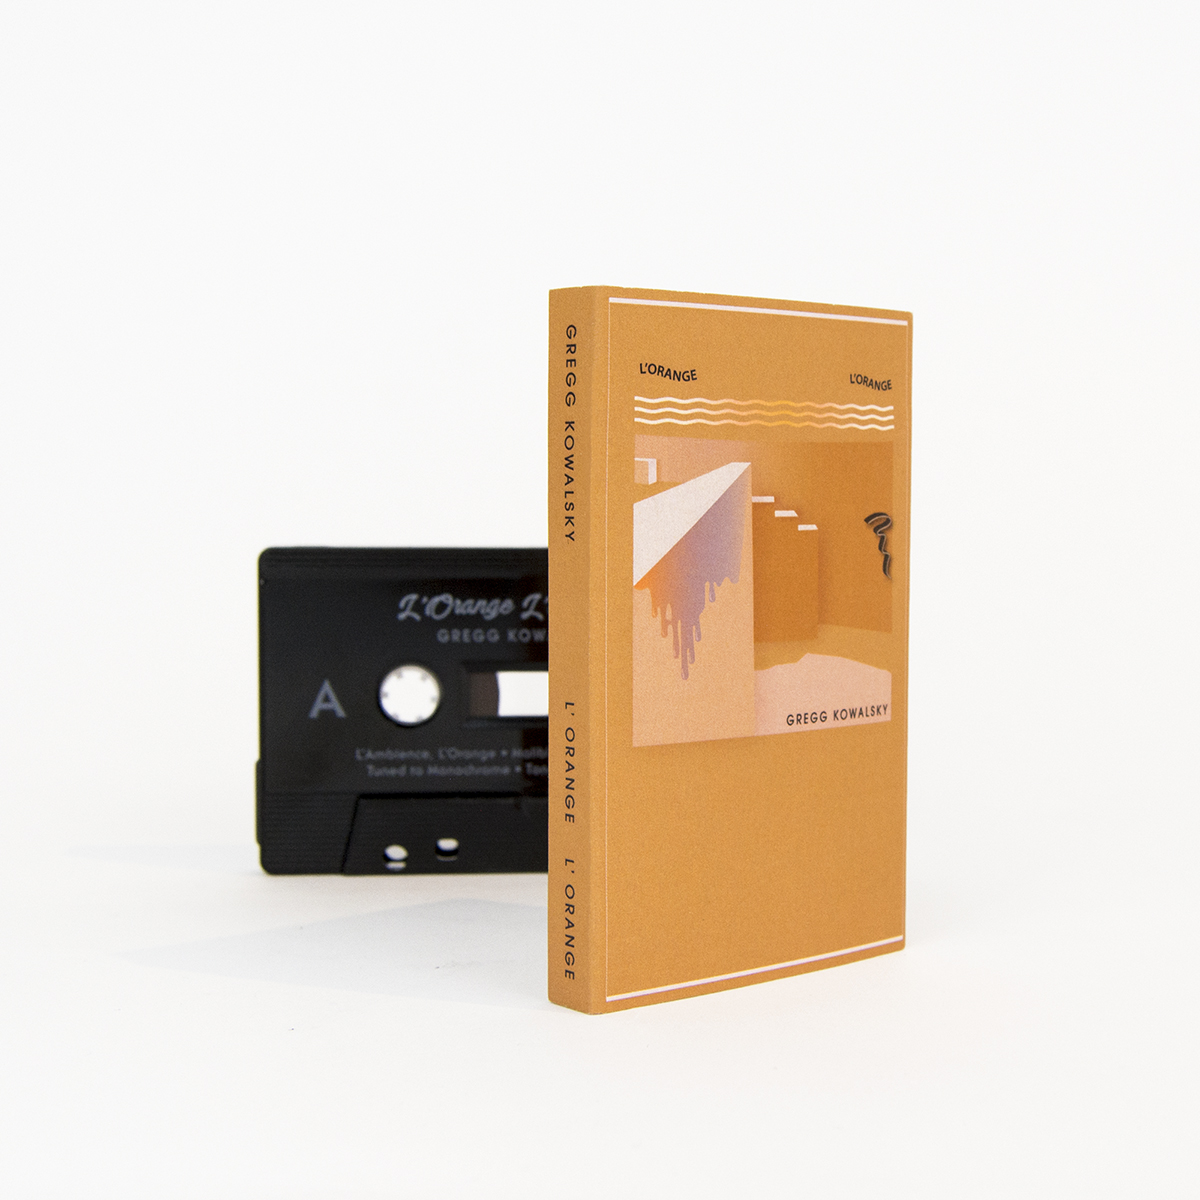 Gregg Kowalsky - L'Orange, L'Orange limited edition cassette